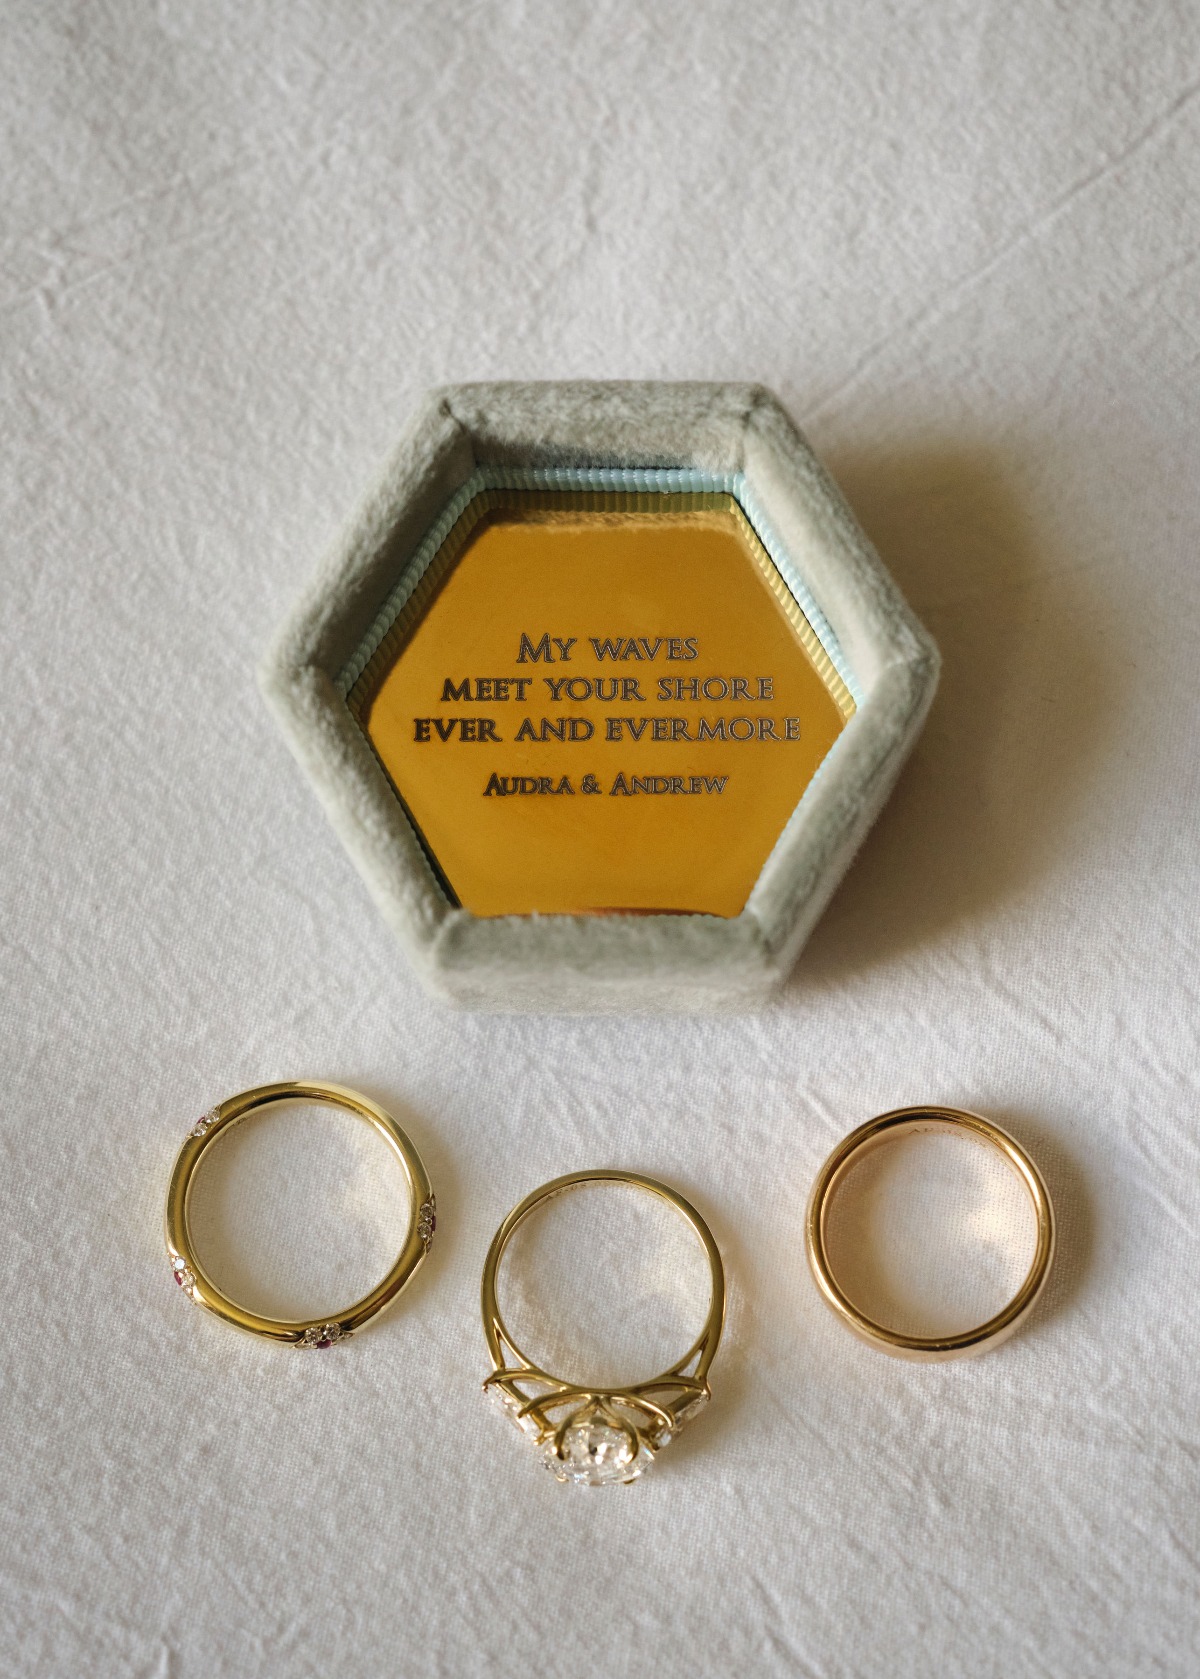 Custom message velvet ring box with gold wedding rings 